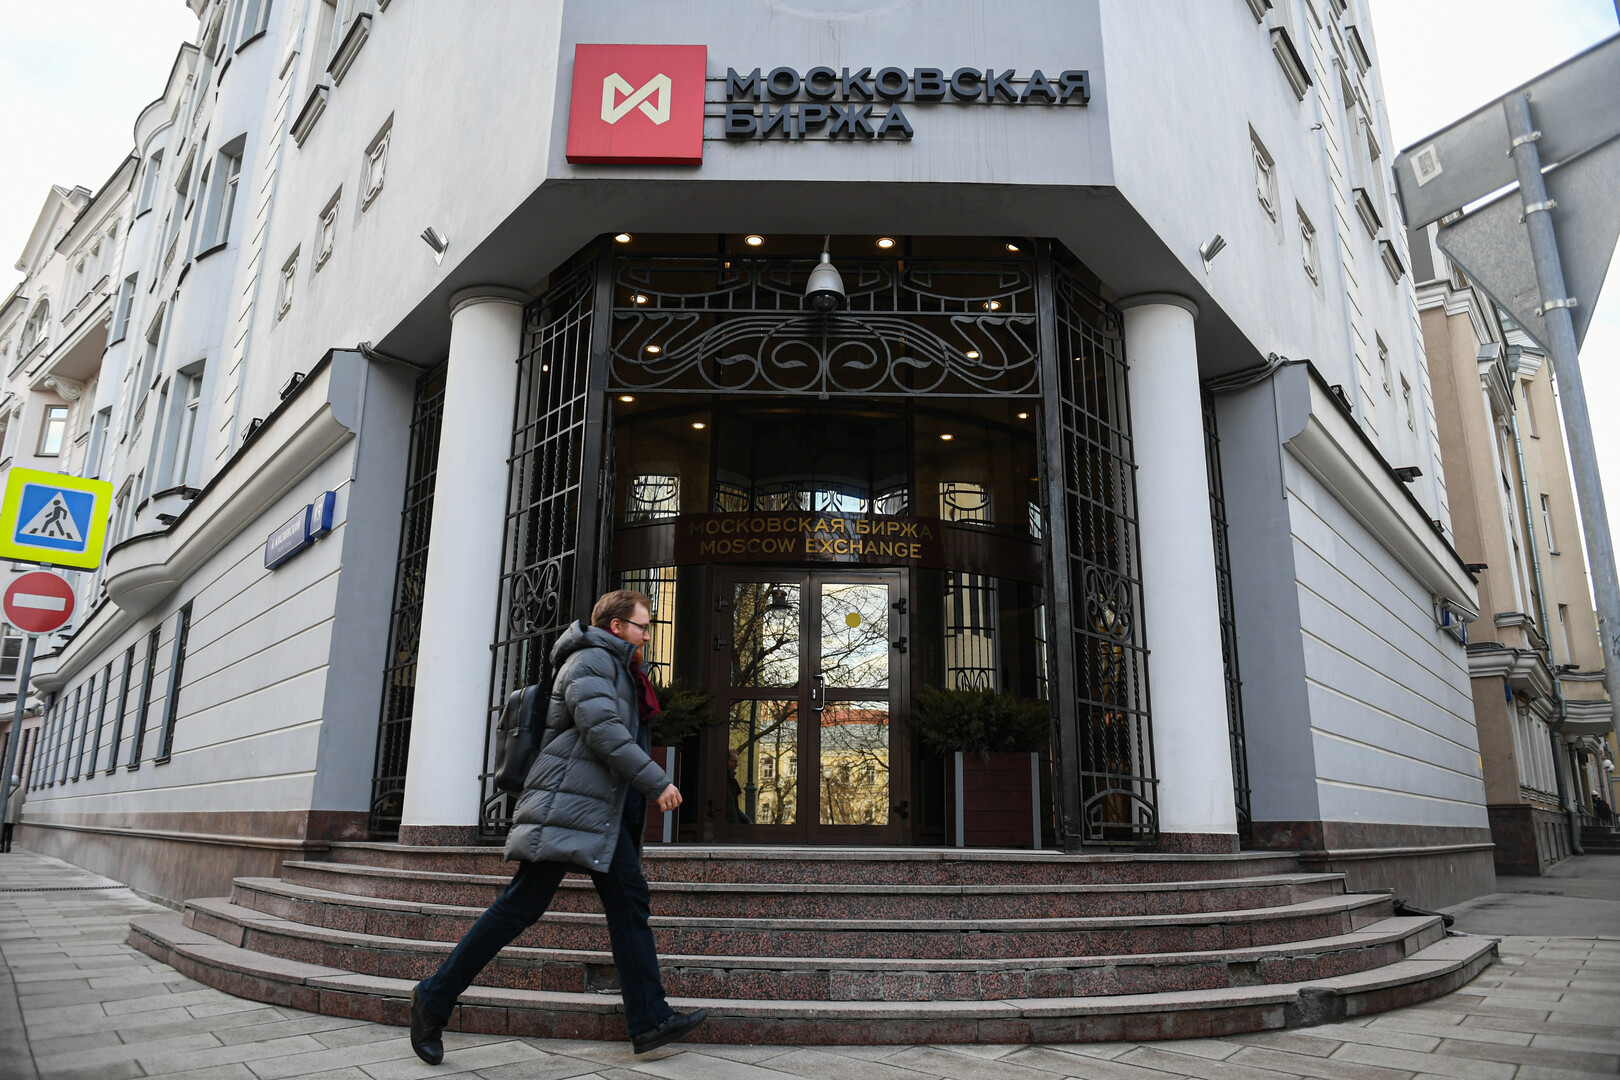 انخفاض حاد في بورصة موسكو بعد قرار لصالح عملاء غير مقيمين من الدول الصديقة